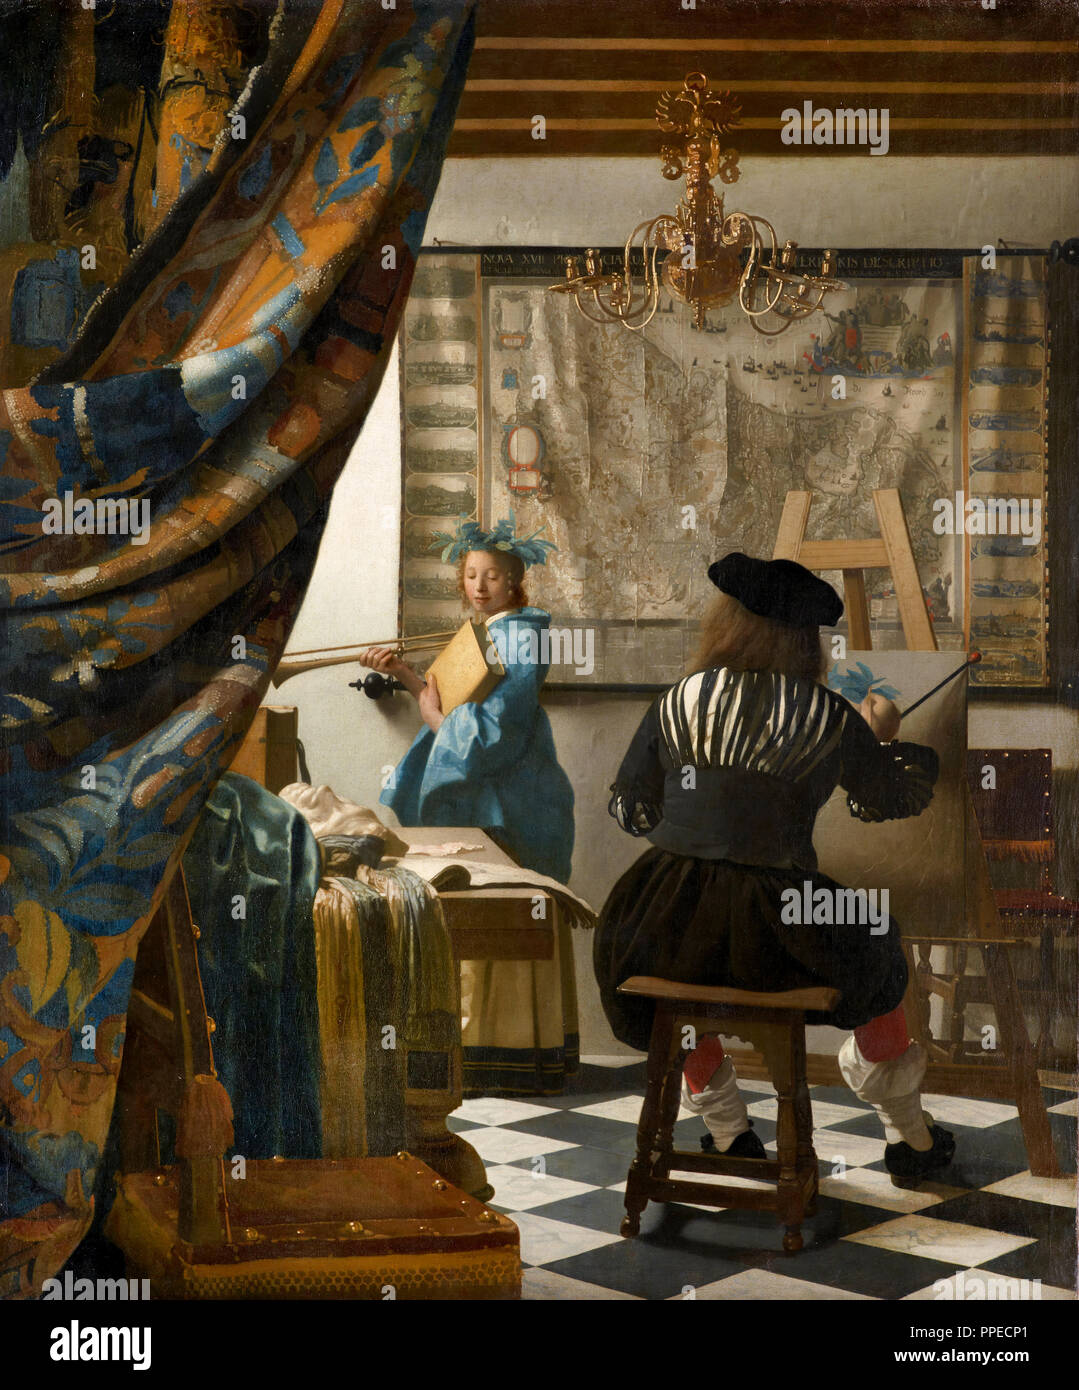 Johannes Vermeer - Die Kunst der Malerei. Circa 1666-1668. Öl auf Leinwand. Kunsthistorisches Museum, Wien, Österreich. Stockfoto